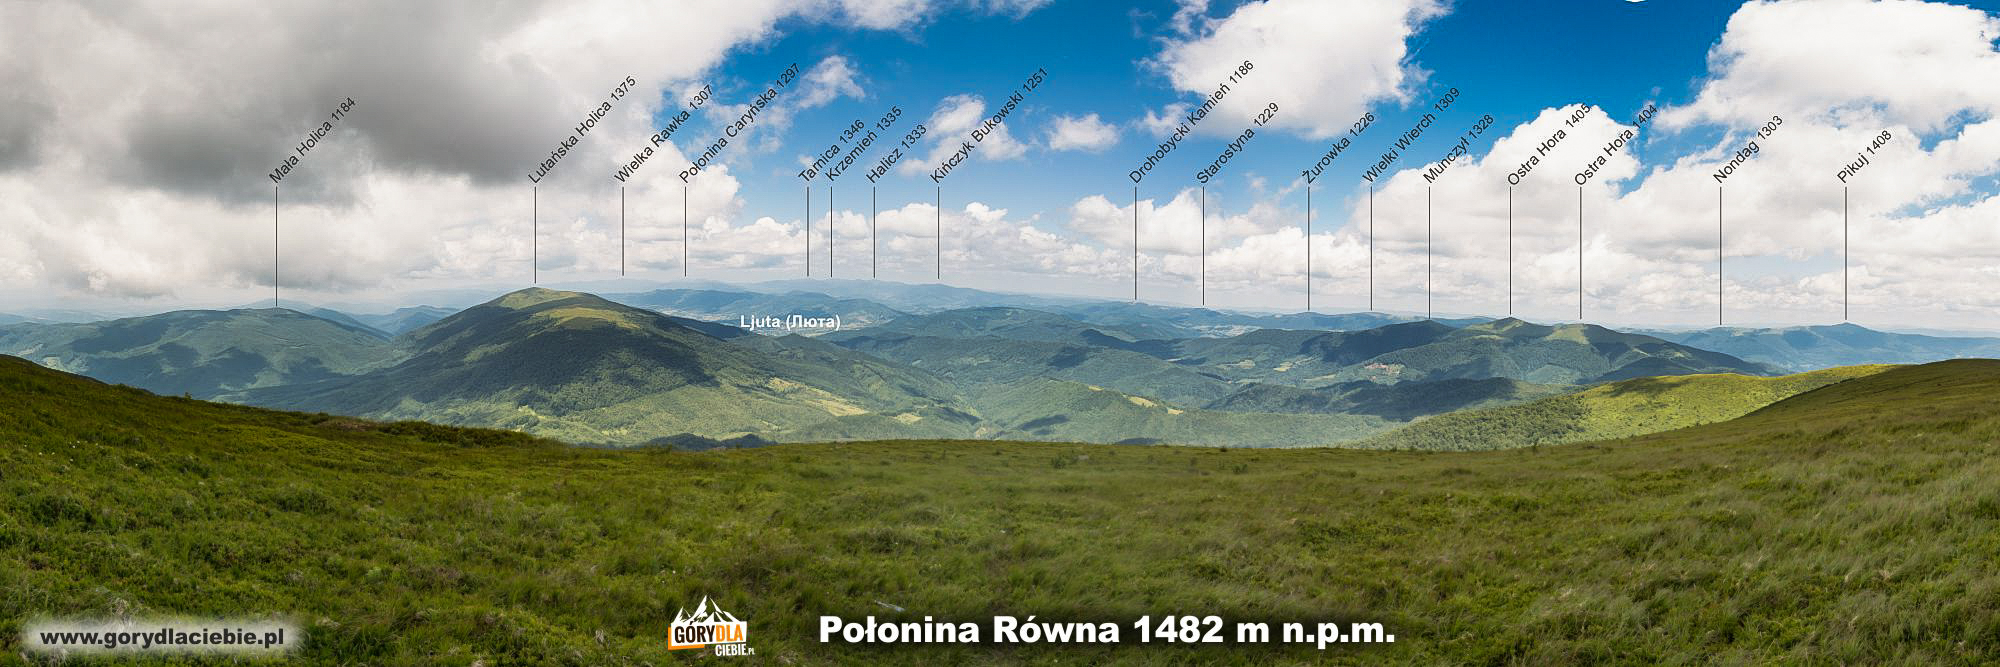 Połonina Równa (1482 m) - panorama z opisem szczytów